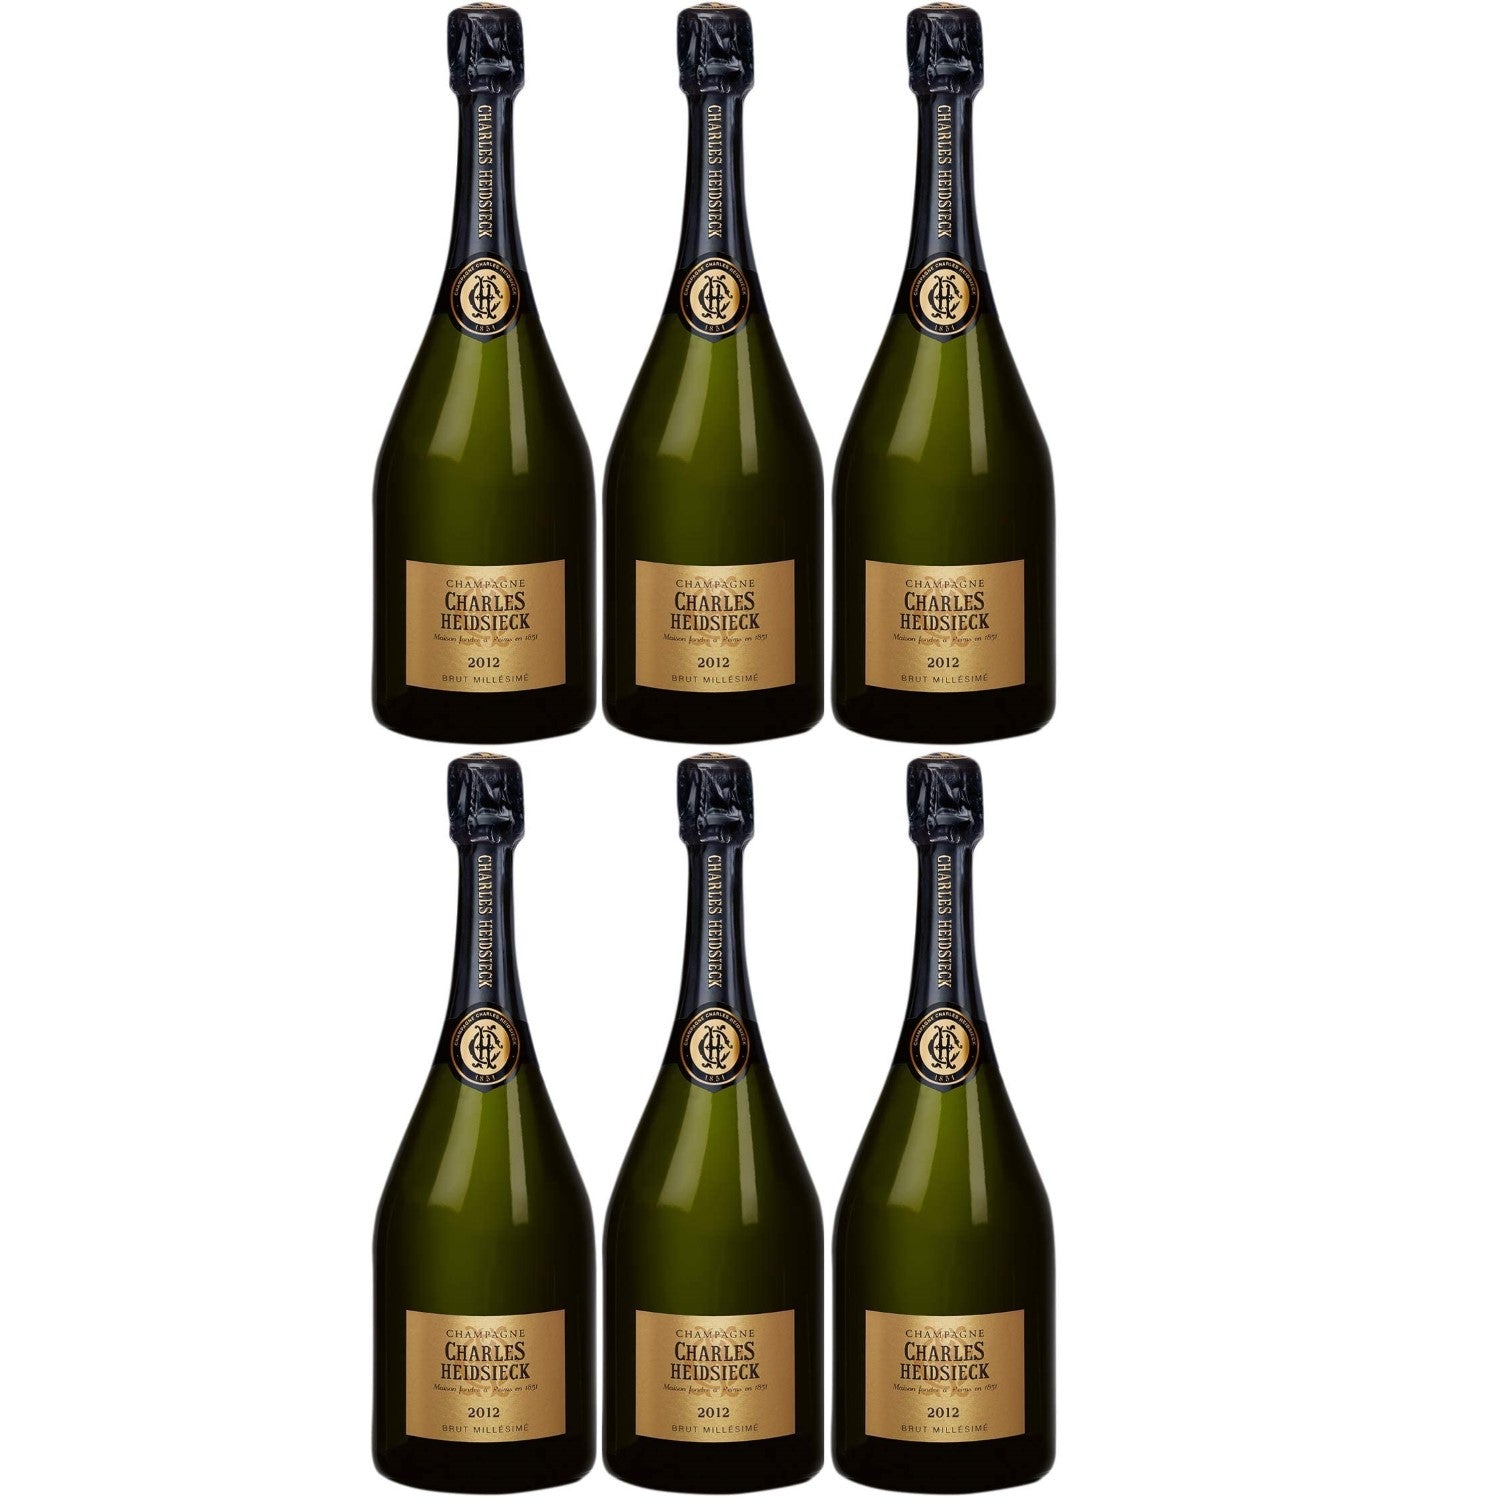 Charles Heidsieck Brut Champagne Champagner Schaumwein Frankreich (6 x 0.75l) - Versanel -